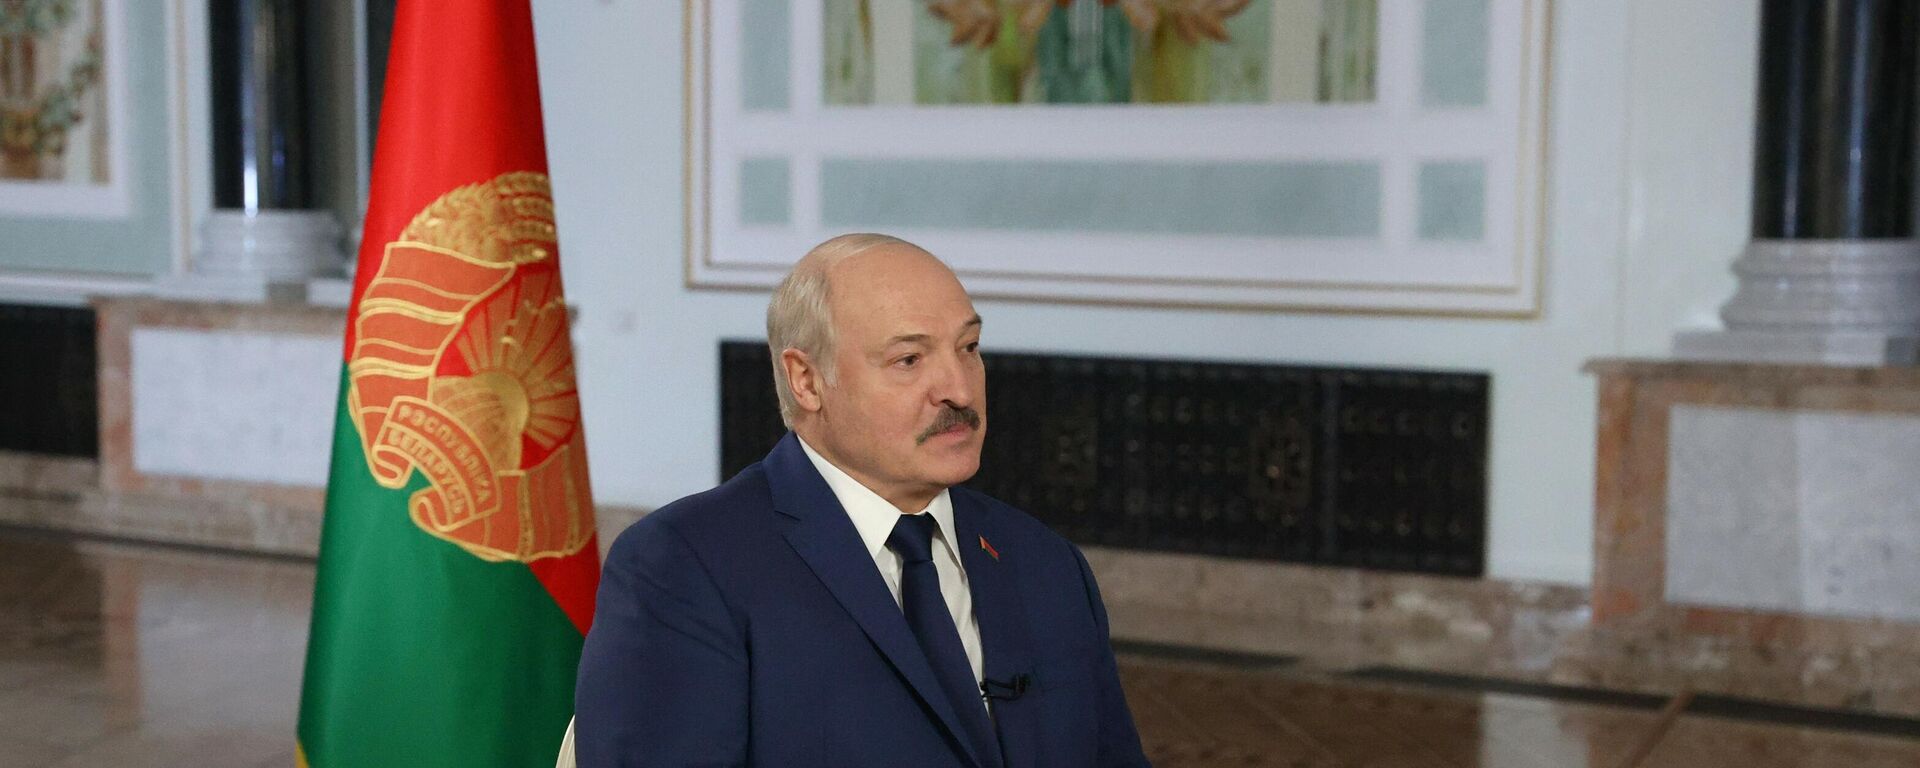 Belarus Devlet Başkanı Aleksandr Lukaşenko, Rossiya Segodnya Uluslararası Haber Ajansı Genel Müdürü Dmitriy Kiselev’e röportaj verdi. - Sputnik Türkiye, 1920, 02.12.2021